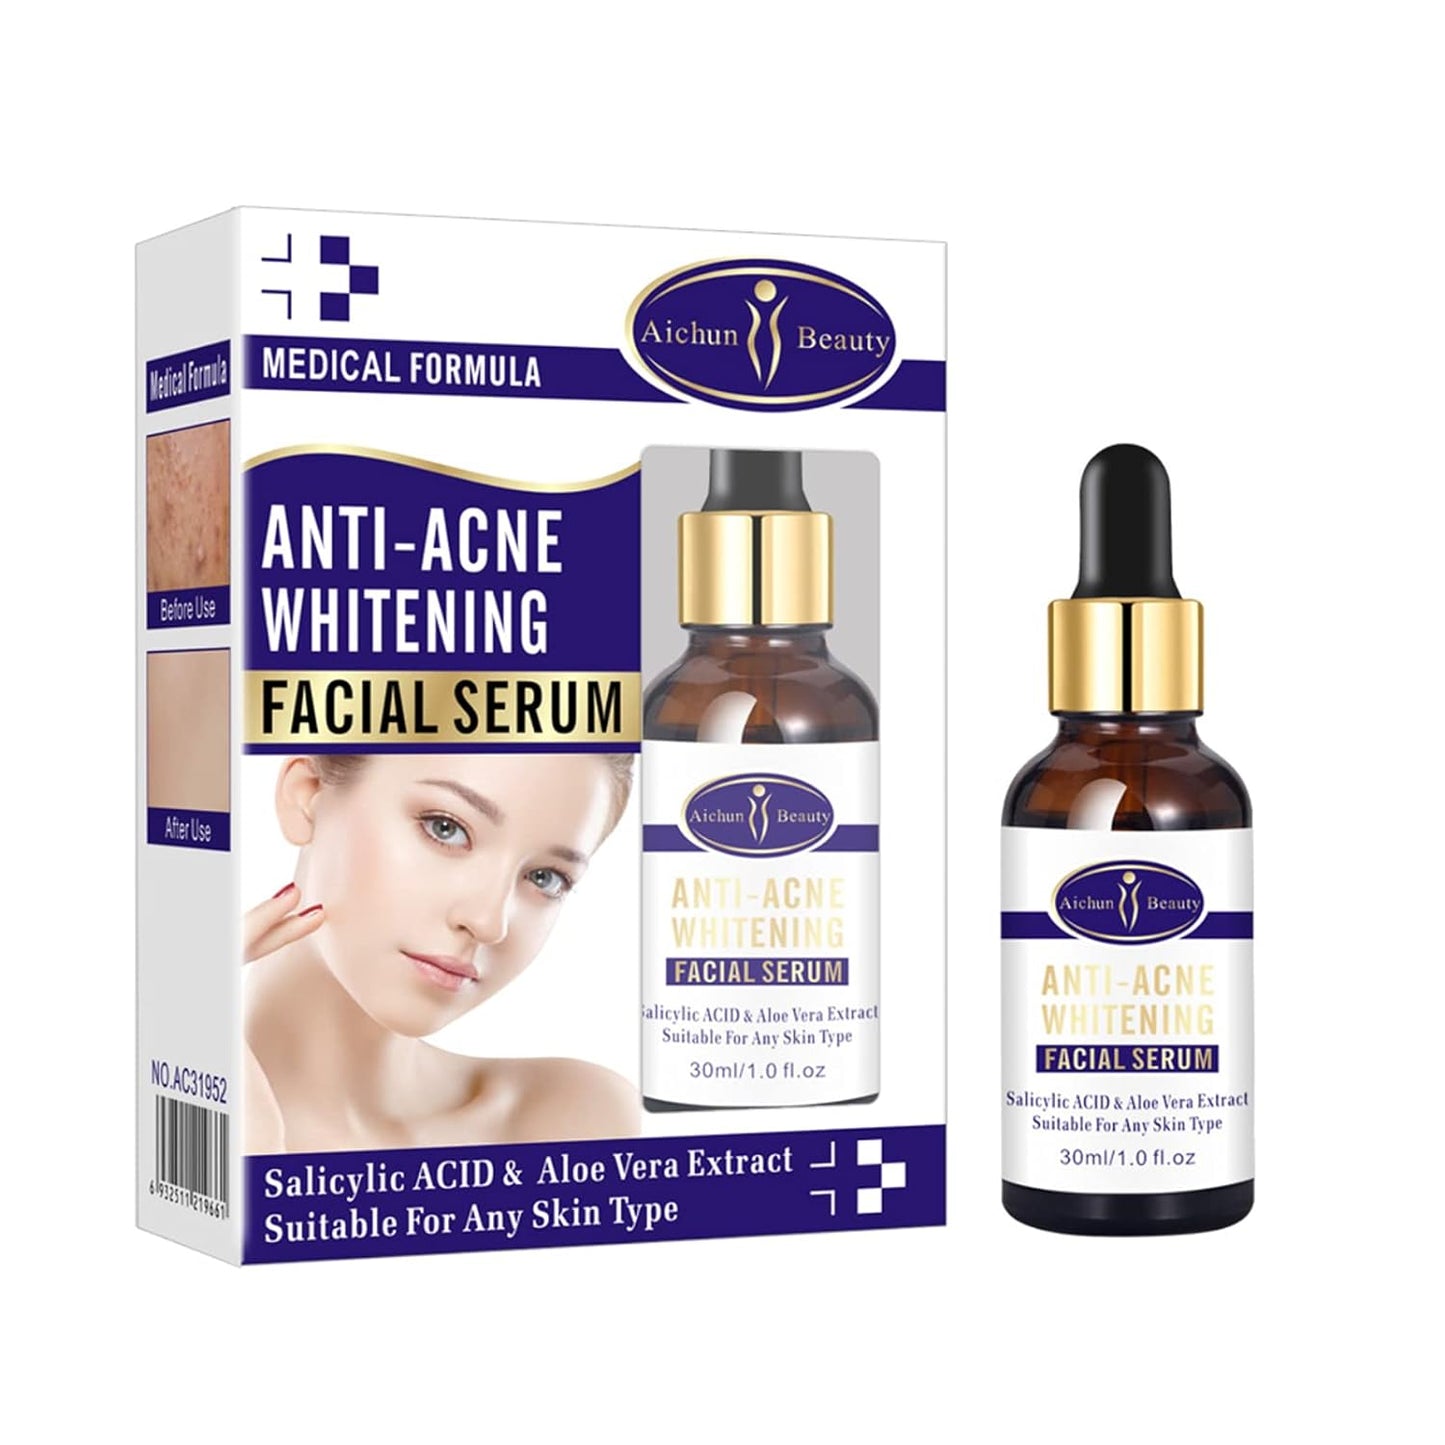 AICHUN BEAUTY Anti-Acne Facial Serum 30ml